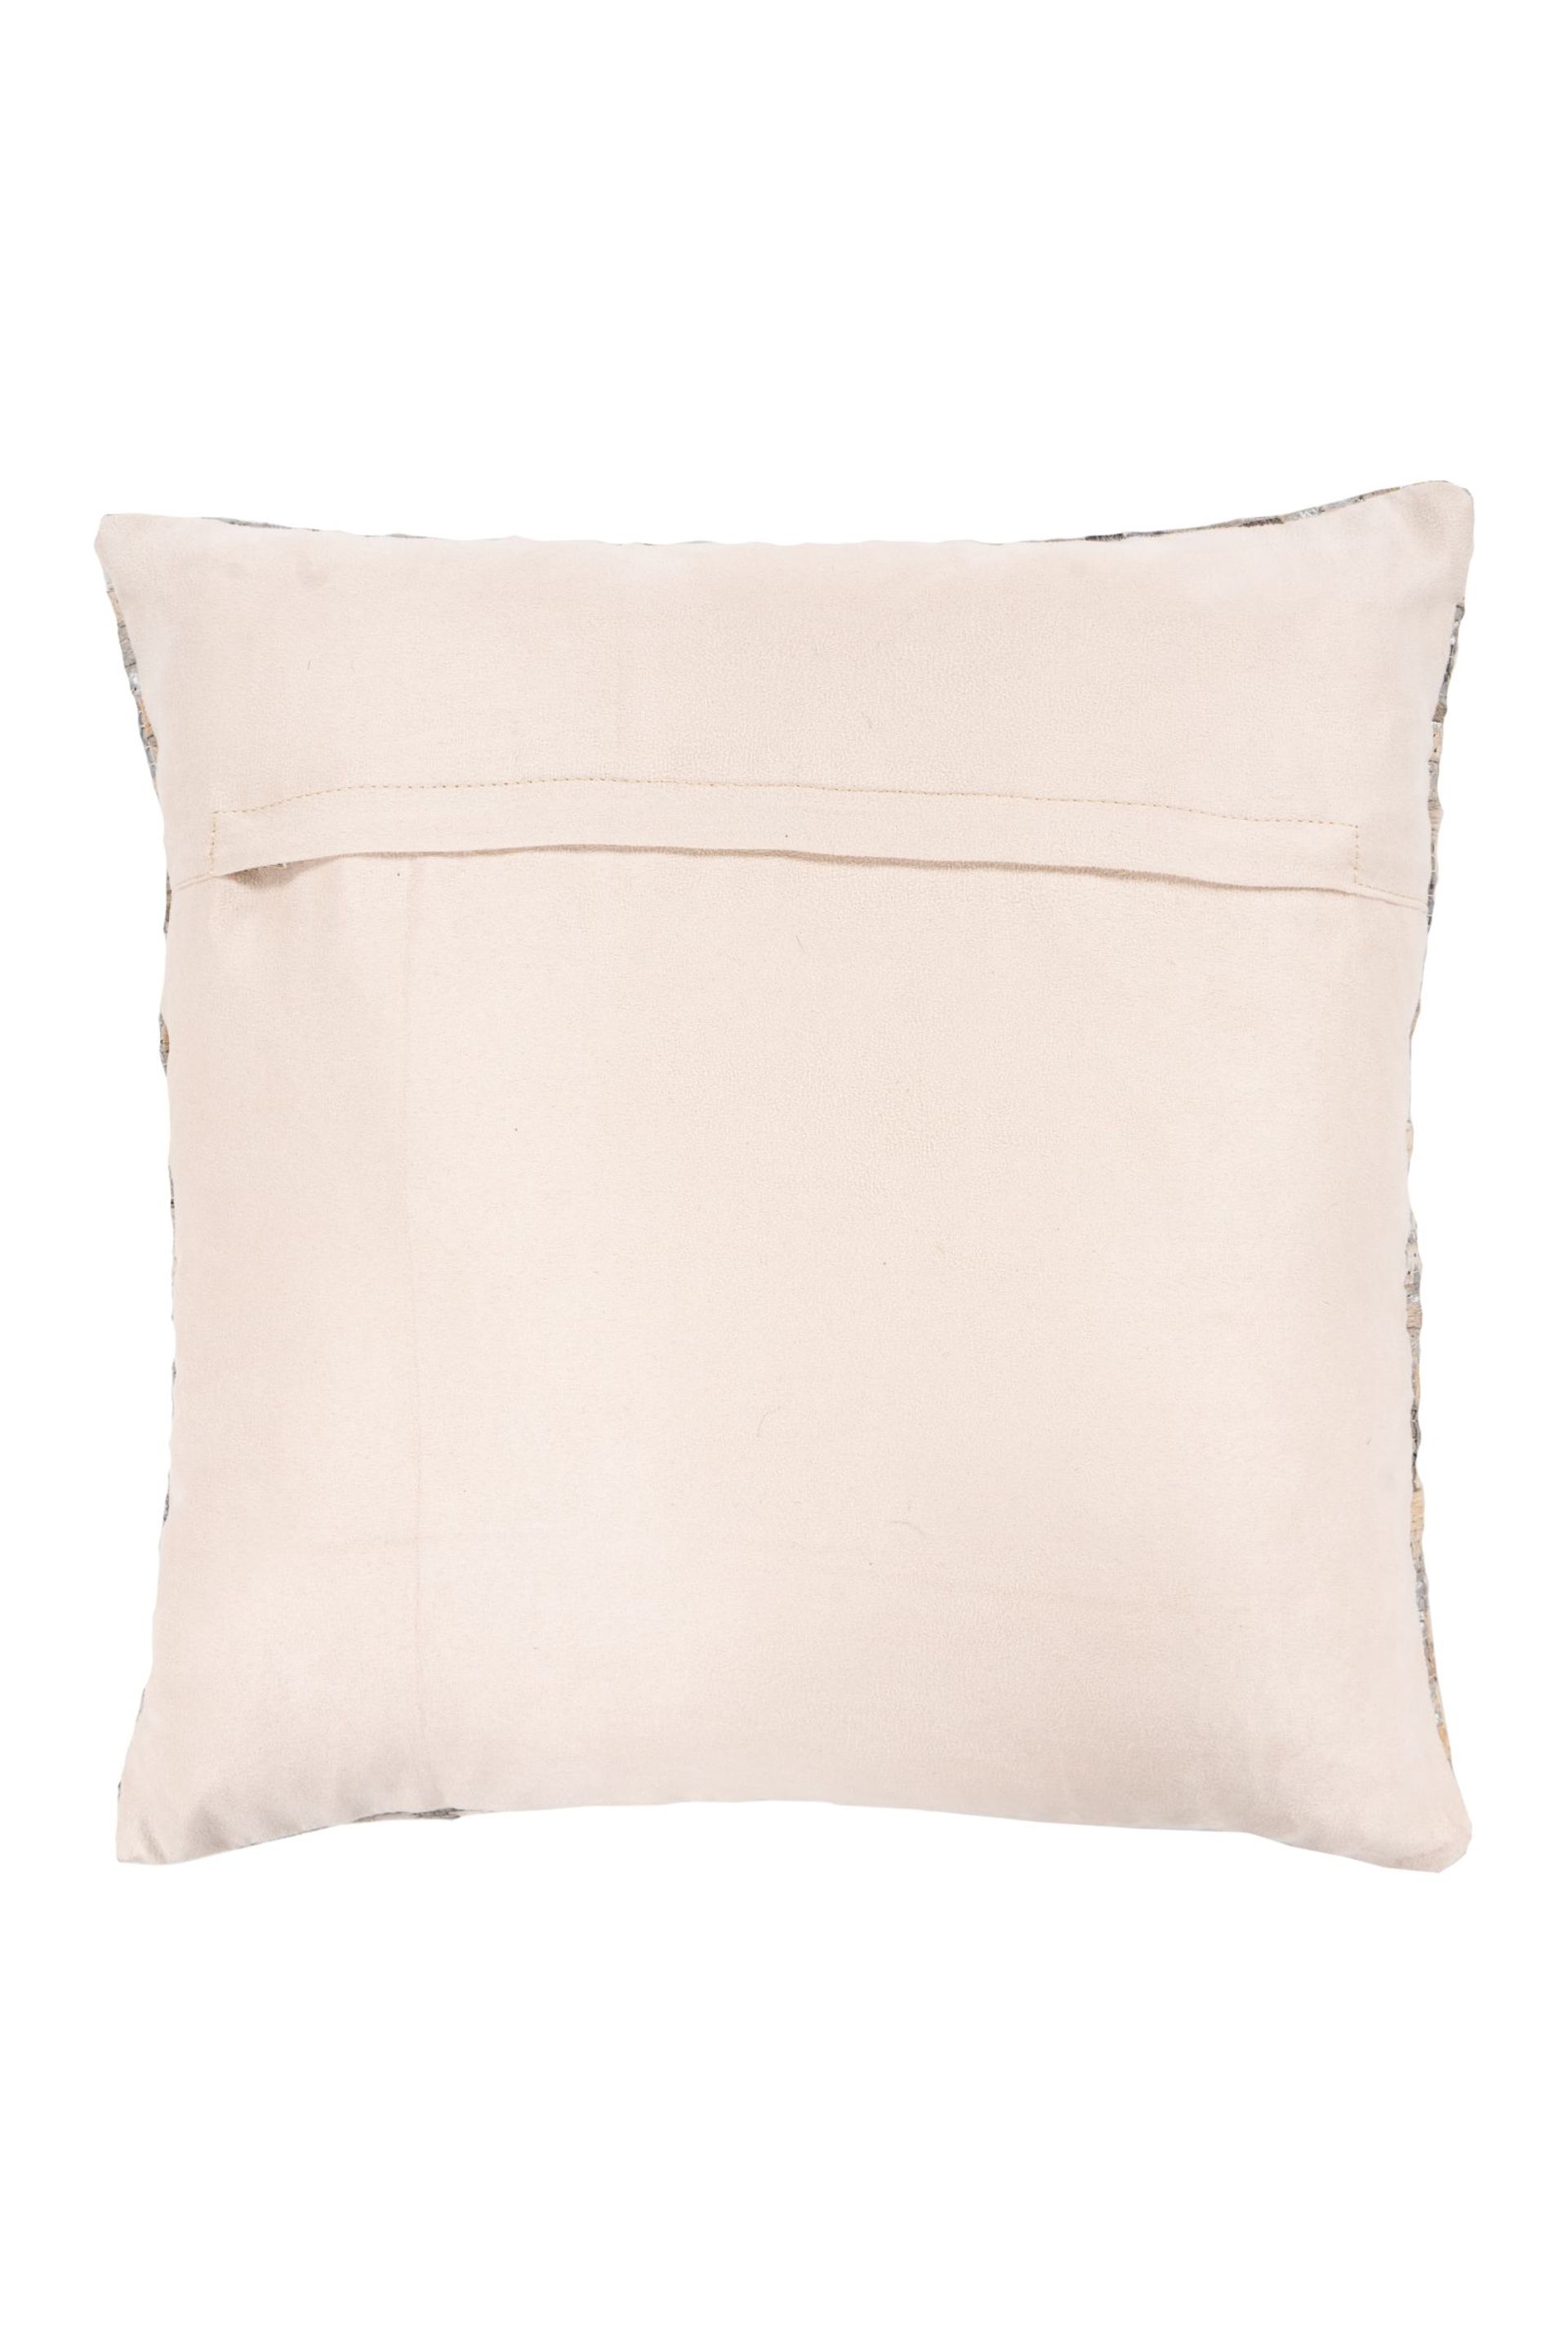 Kissen (gefüllt) Finish Pillow 100 Weiß / Silber 45 cm x 45 cm